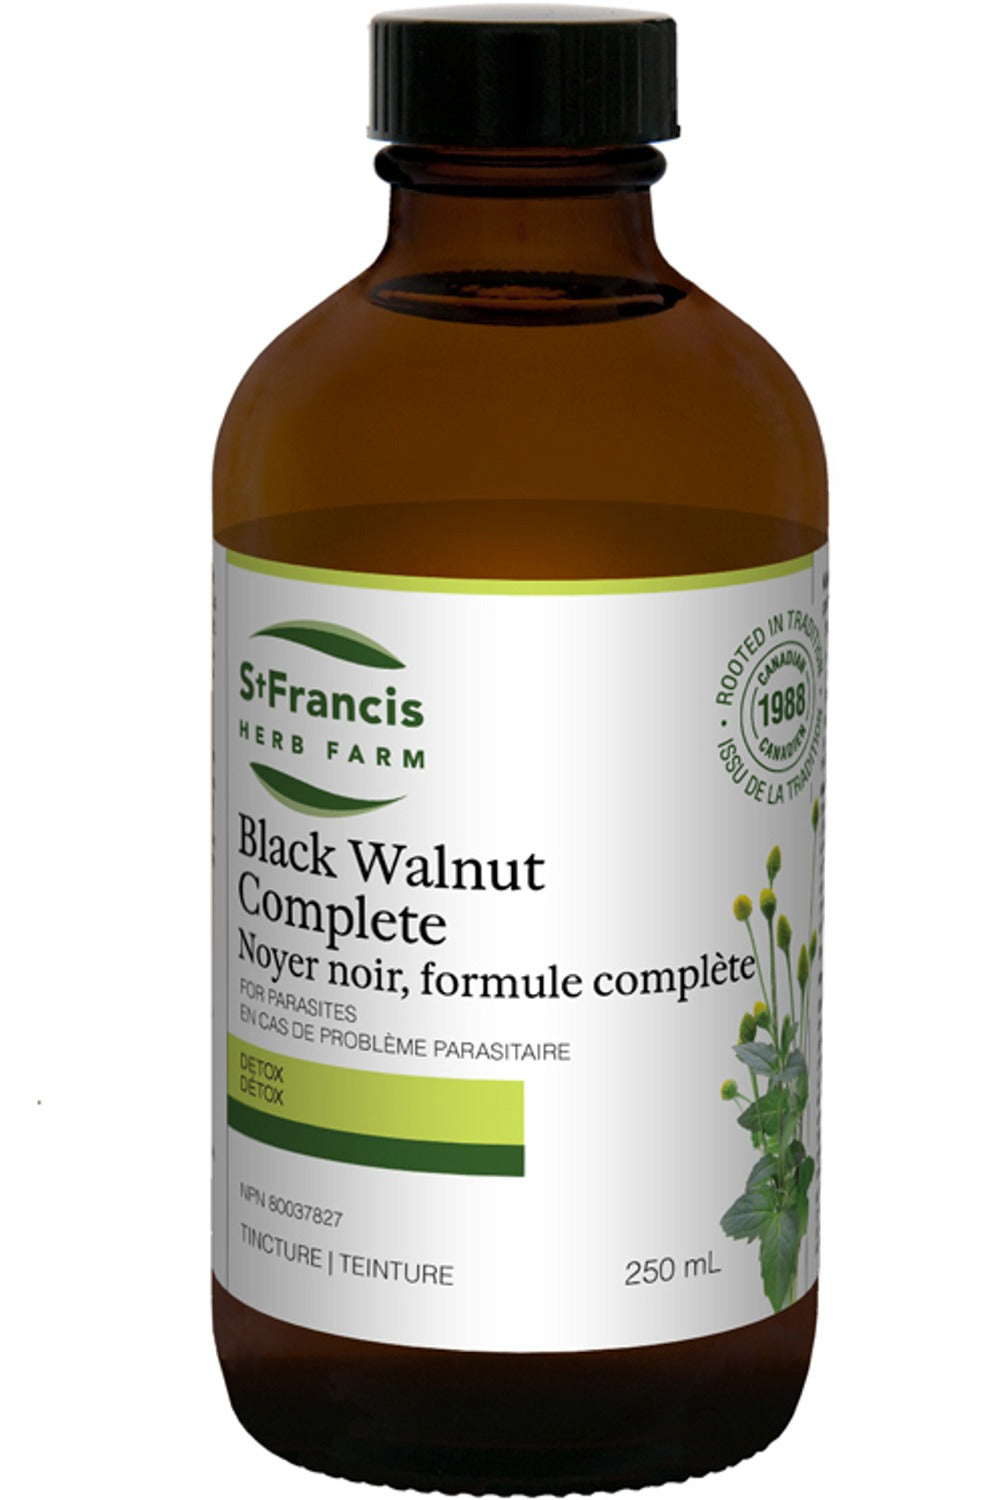 ST FRANCIS HERB FARM Black Walnut Complete (250 ml)